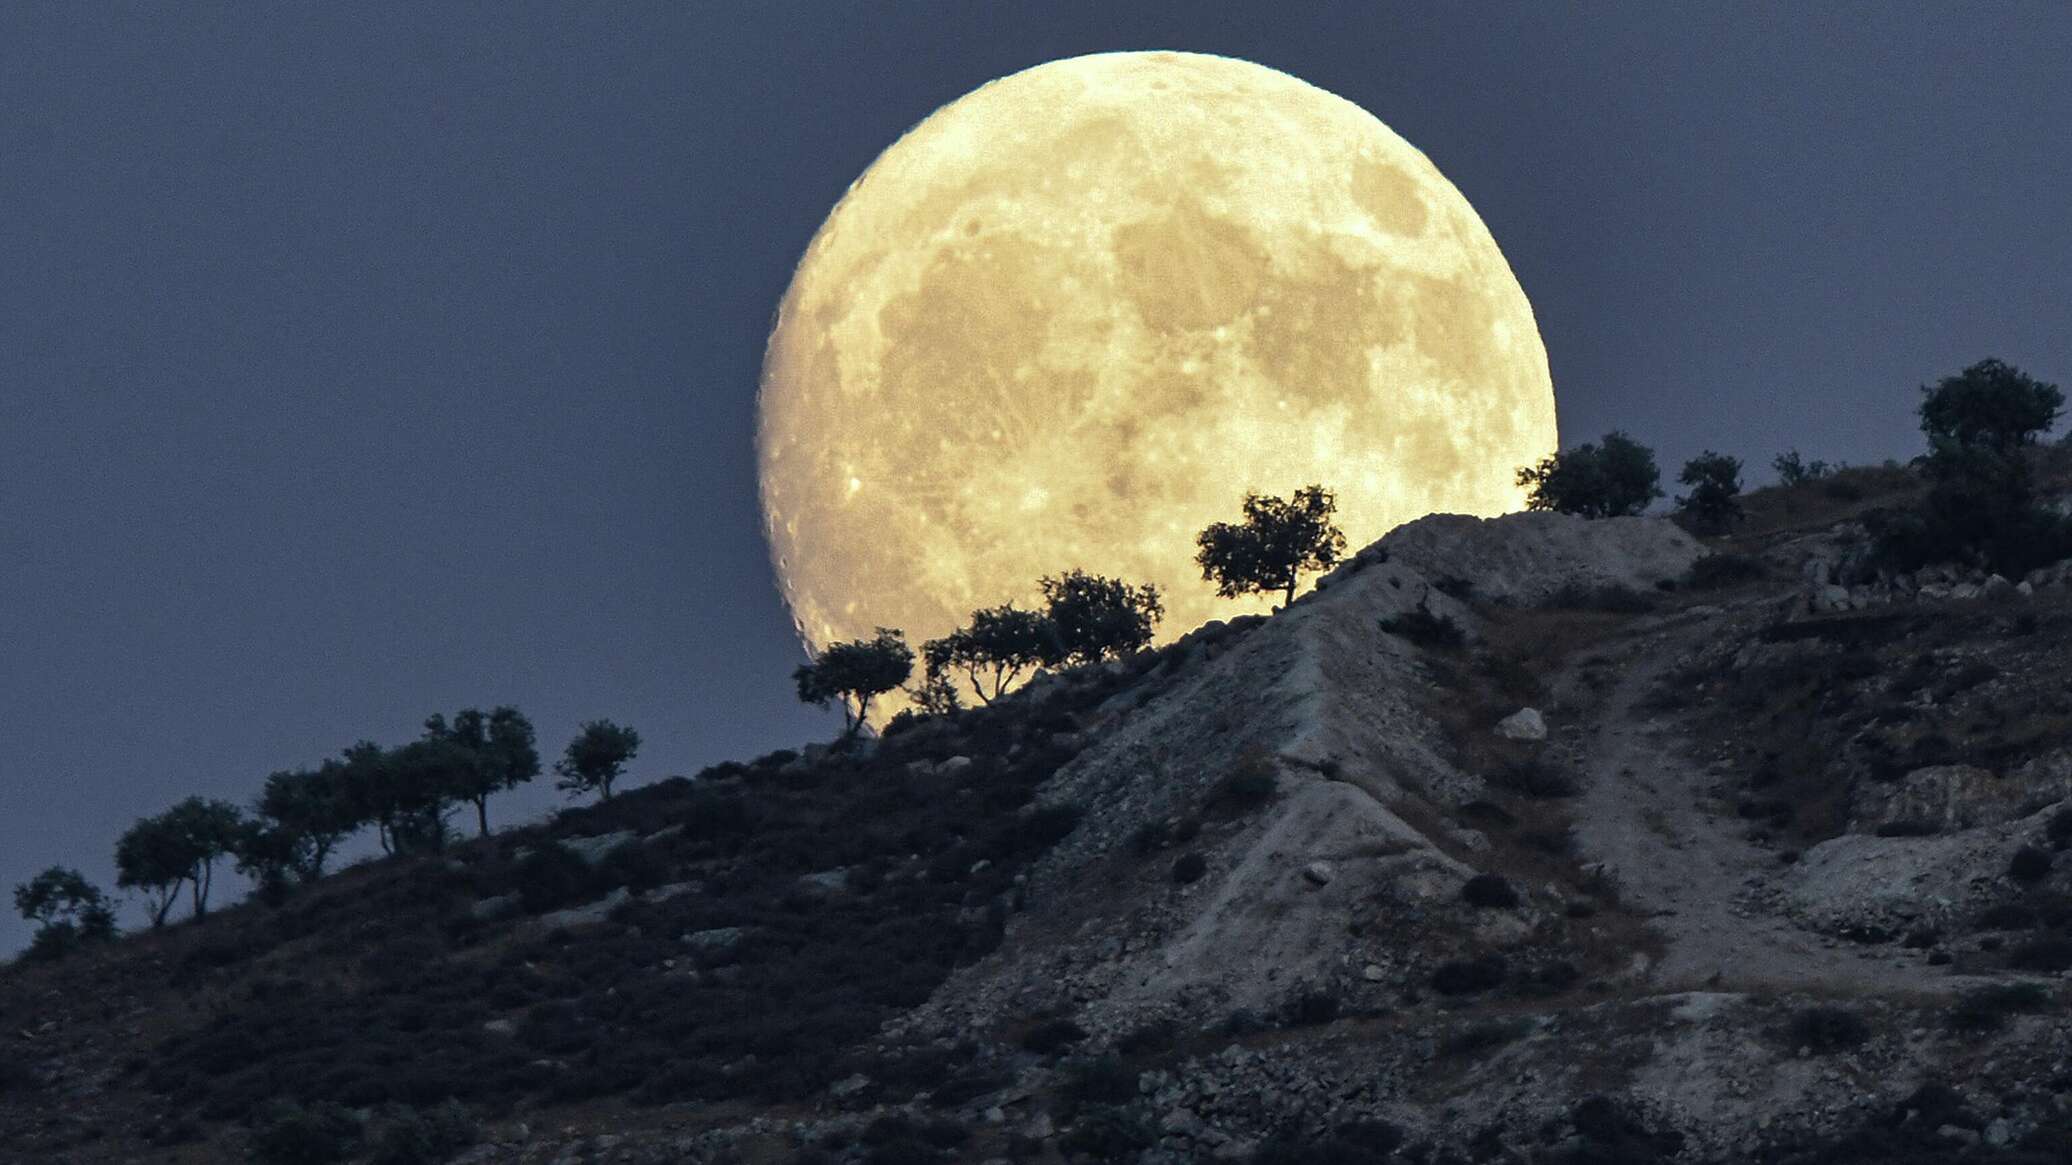 качественные фото луны